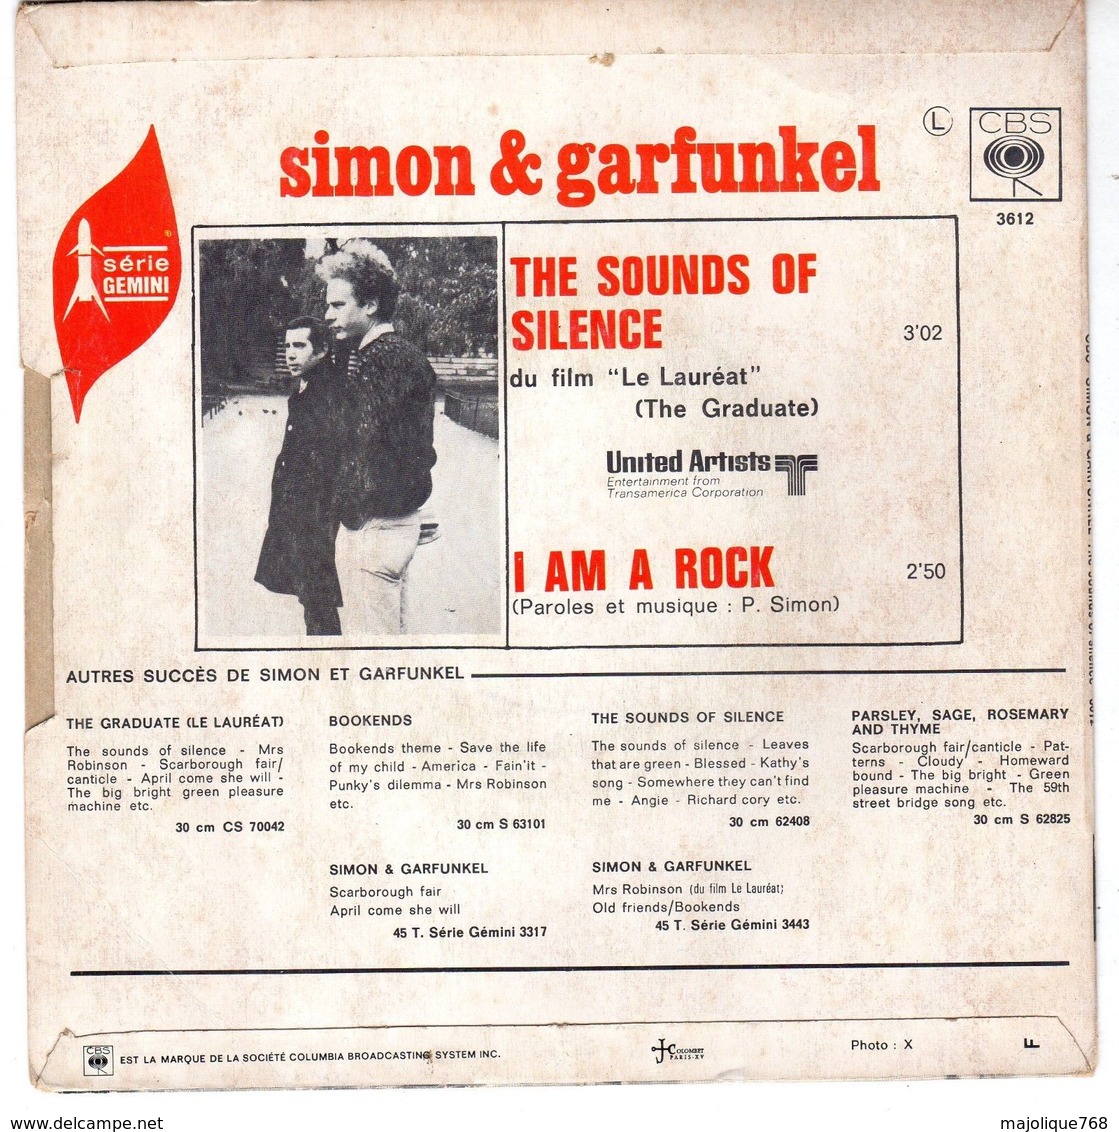 Disque De Simon & Garfunkel - The Sounds Of Silence - CBS 3612 - 1966 - - Filmmusik